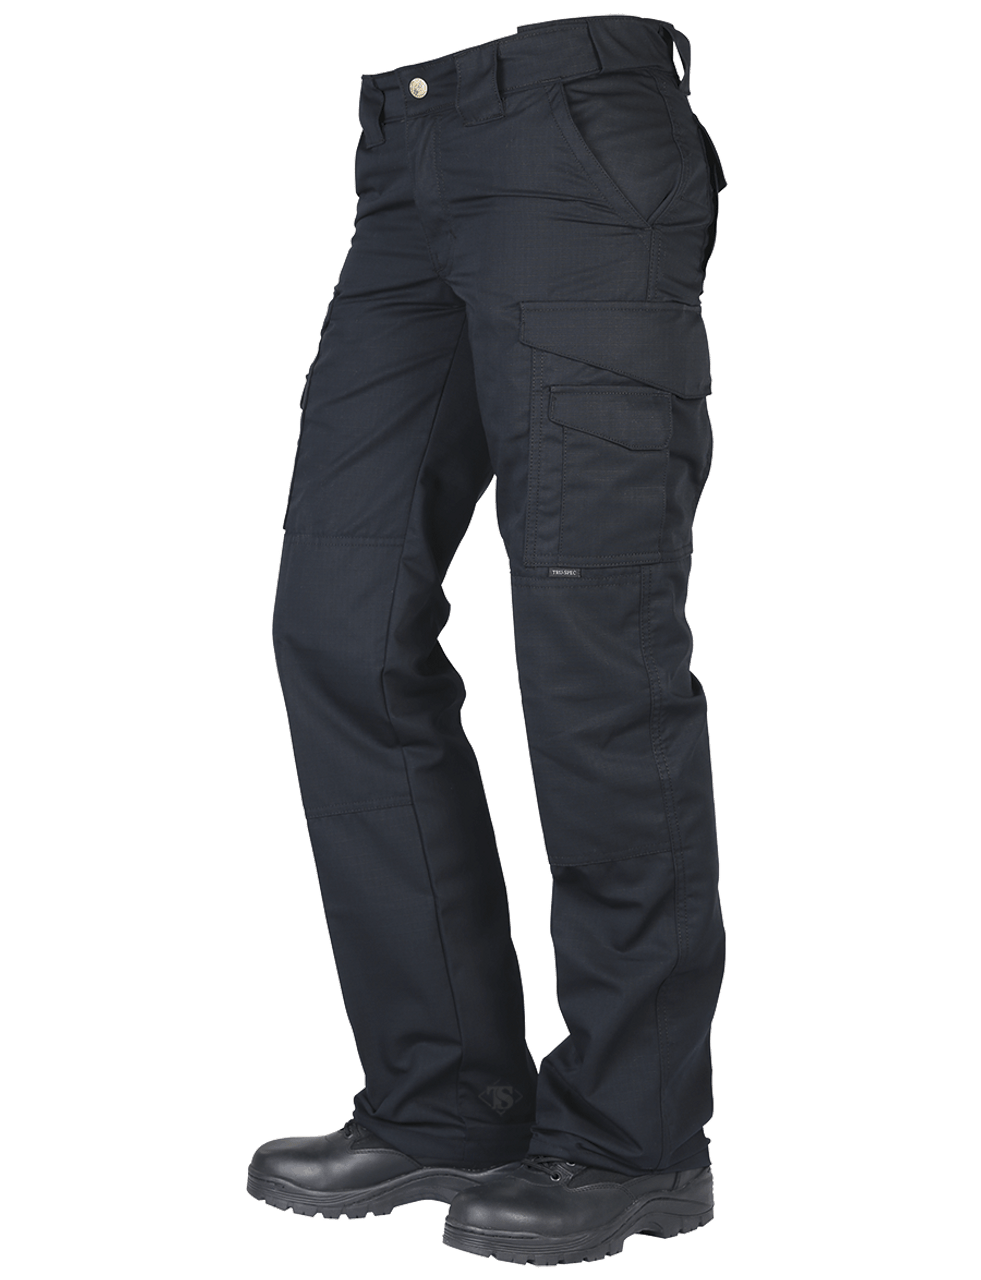 Women's Propper Uniform Tactical Pants | Tactical Gear Superstore |  TacticalGear.com